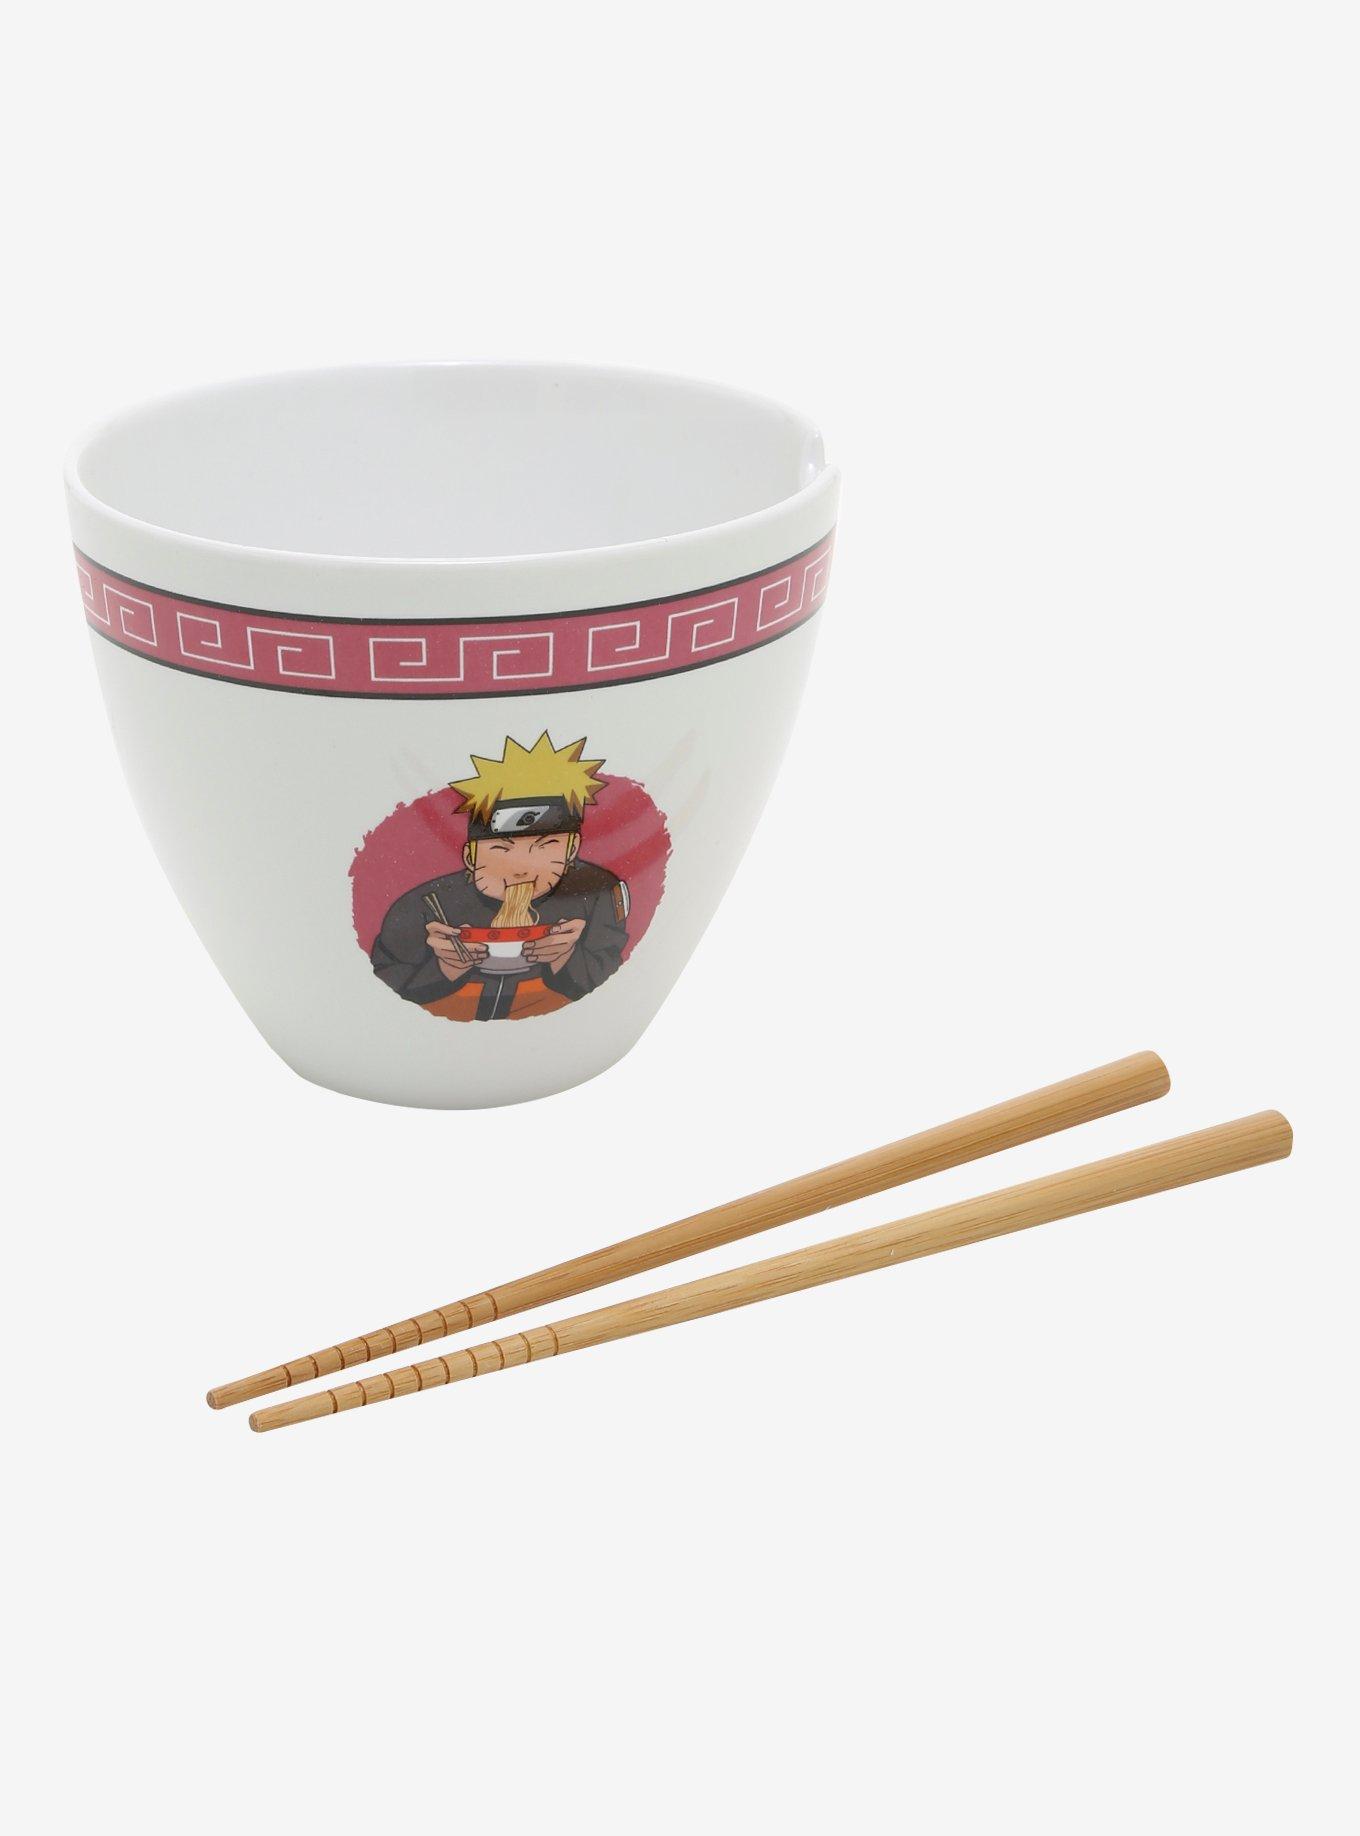 Naruto Ramen Bowl w/ Chopsticks Ichiraku Ramen Shop NIB 16 oz